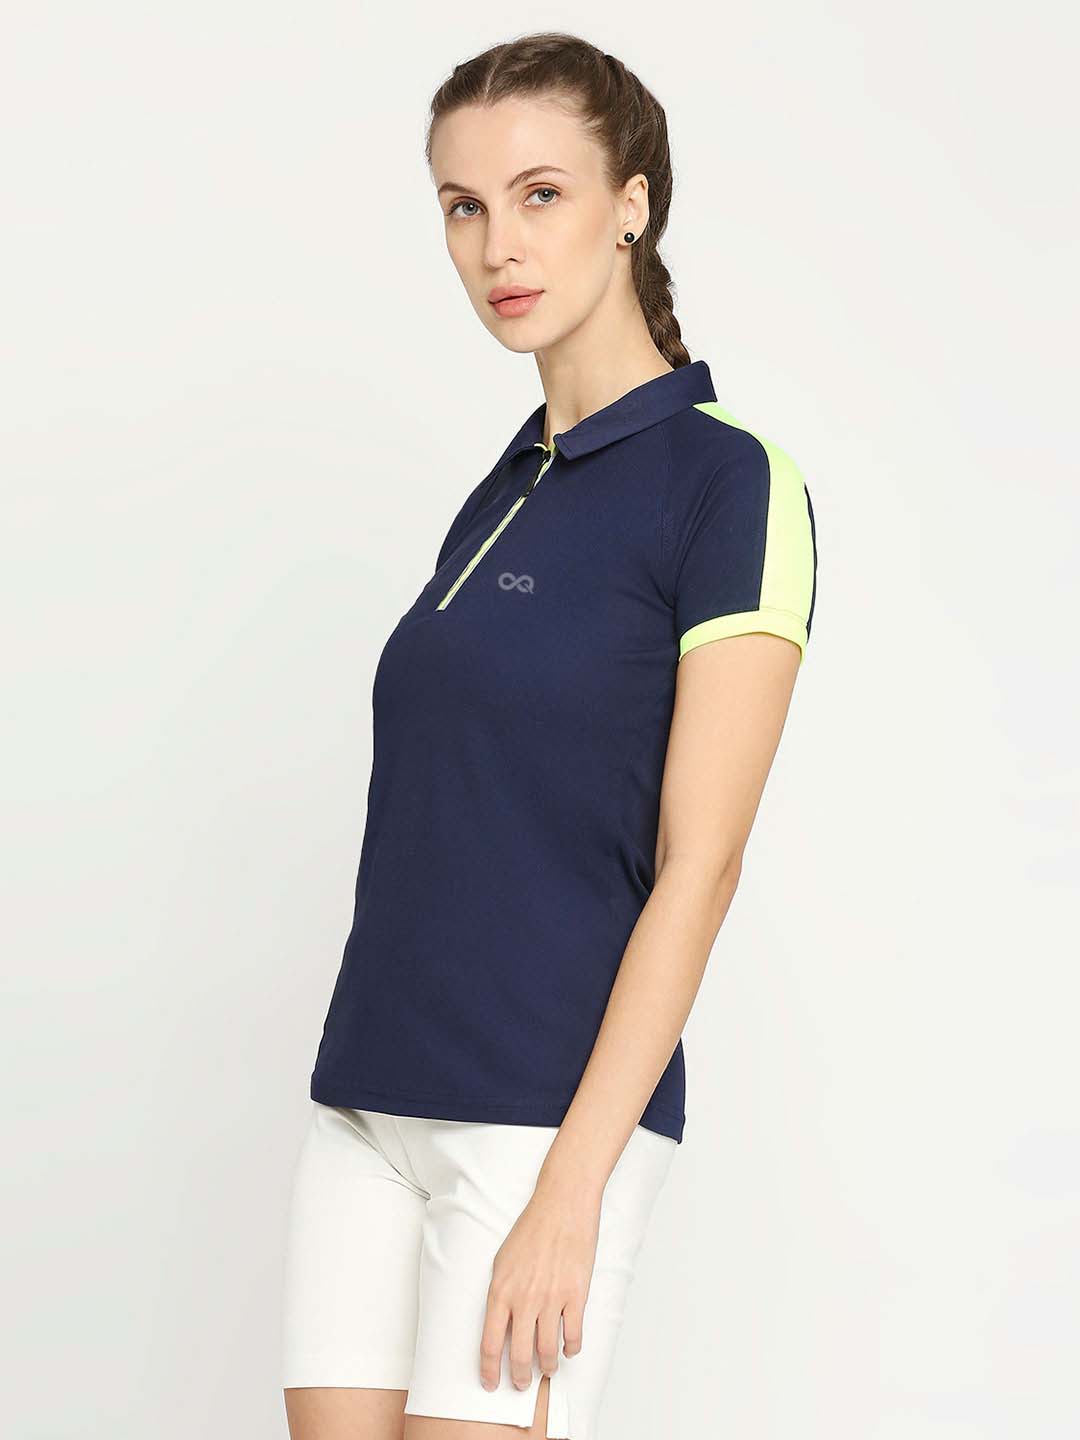 Women's Golf Polo Shirt - Navy Blue